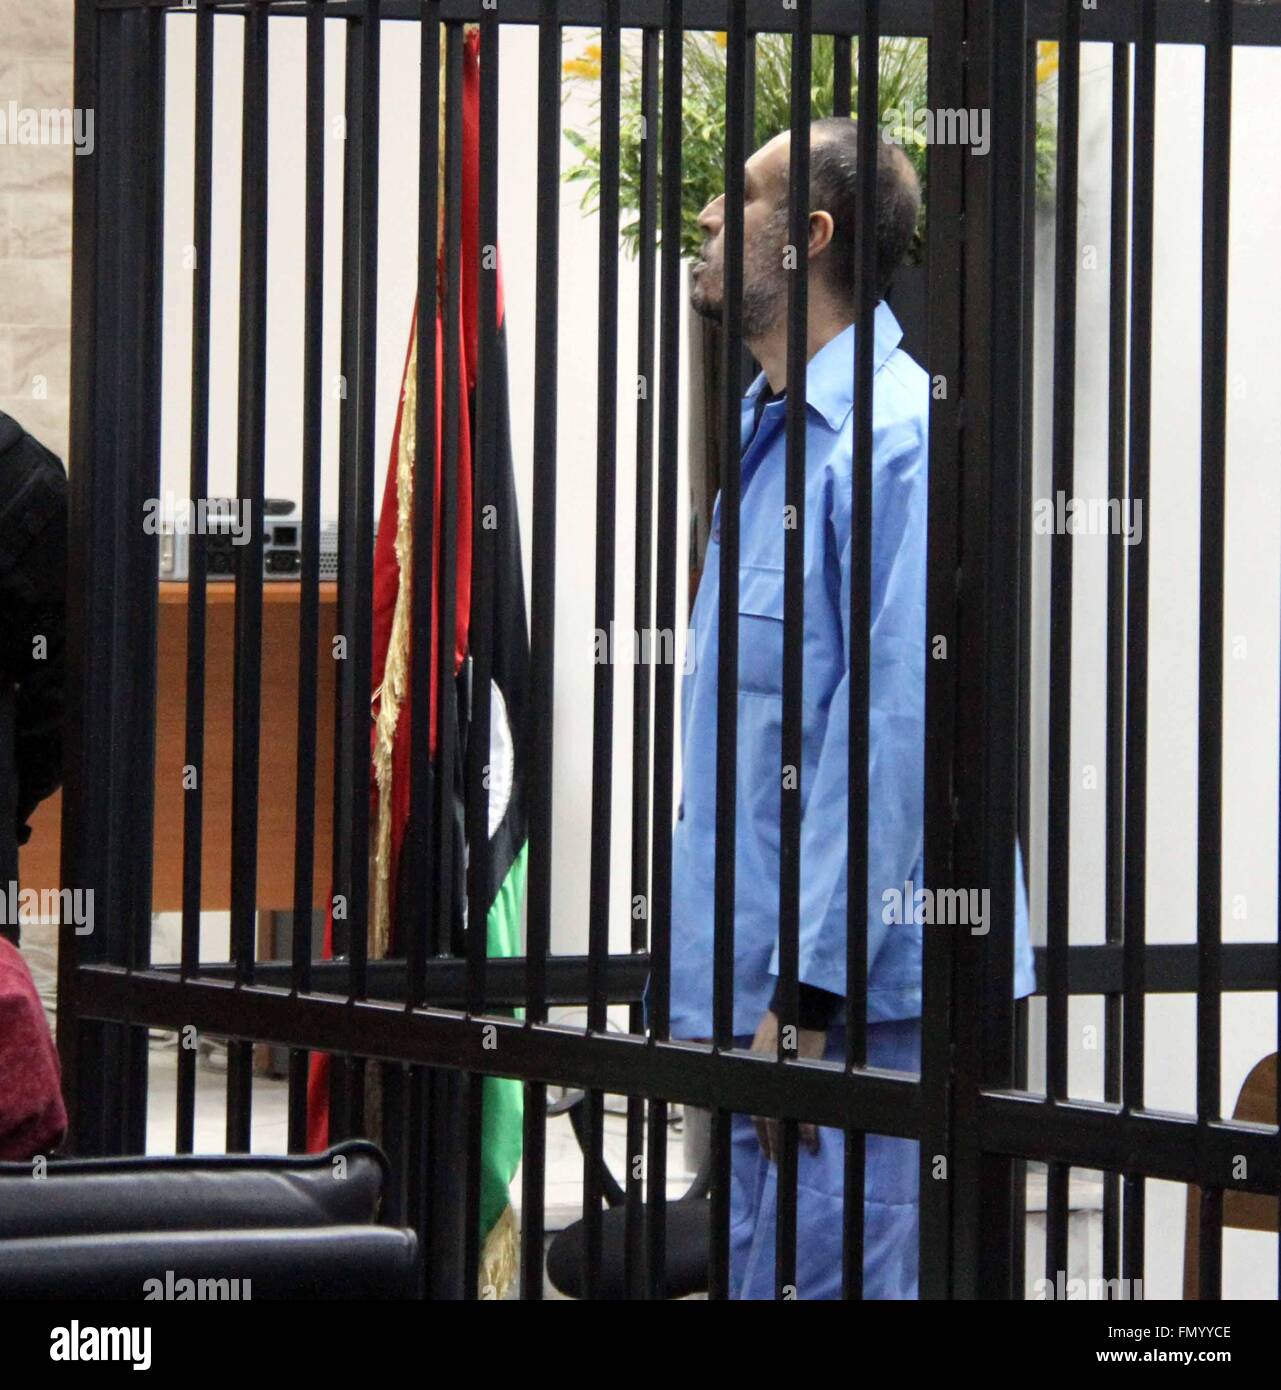 Tripoli (Libye). Mar 13, 2016. Saadi Kadhafi, fils de l'ancien dirigeant libyen Mouammar Kadhafi, attend un procès à un palais à Tripoli, Libye, 13 mars 2016. Saadi face aux charges de meurtre et de réprimer les manifestants pendant le soulèvement de 2011 qui a renversé le régime de Kadhafi. Credit : Hamza Turkia/Xinhua/Alamy Live News Banque D'Images